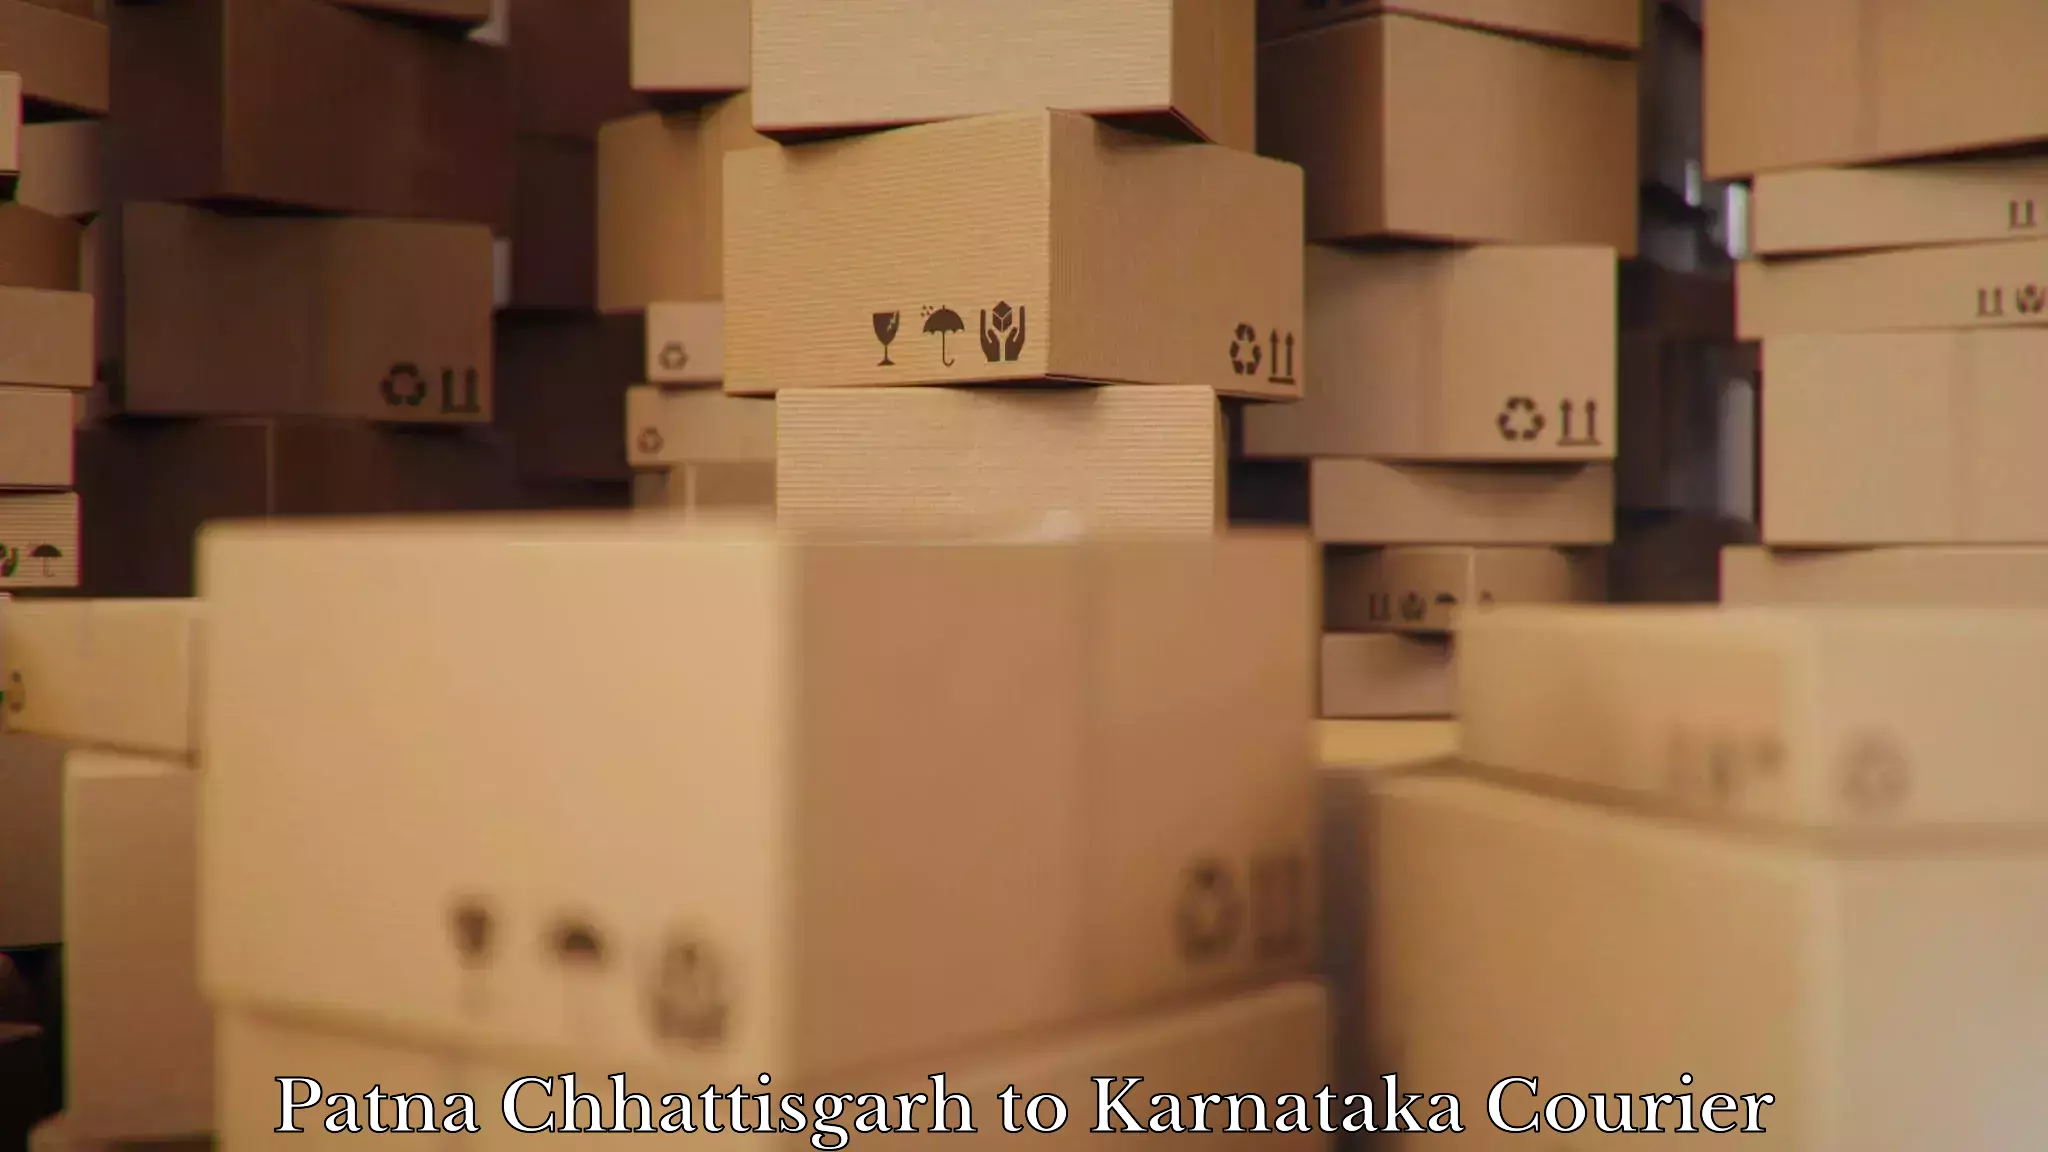 Furniture movers and packers Patna Chhattisgarh to Karnataka